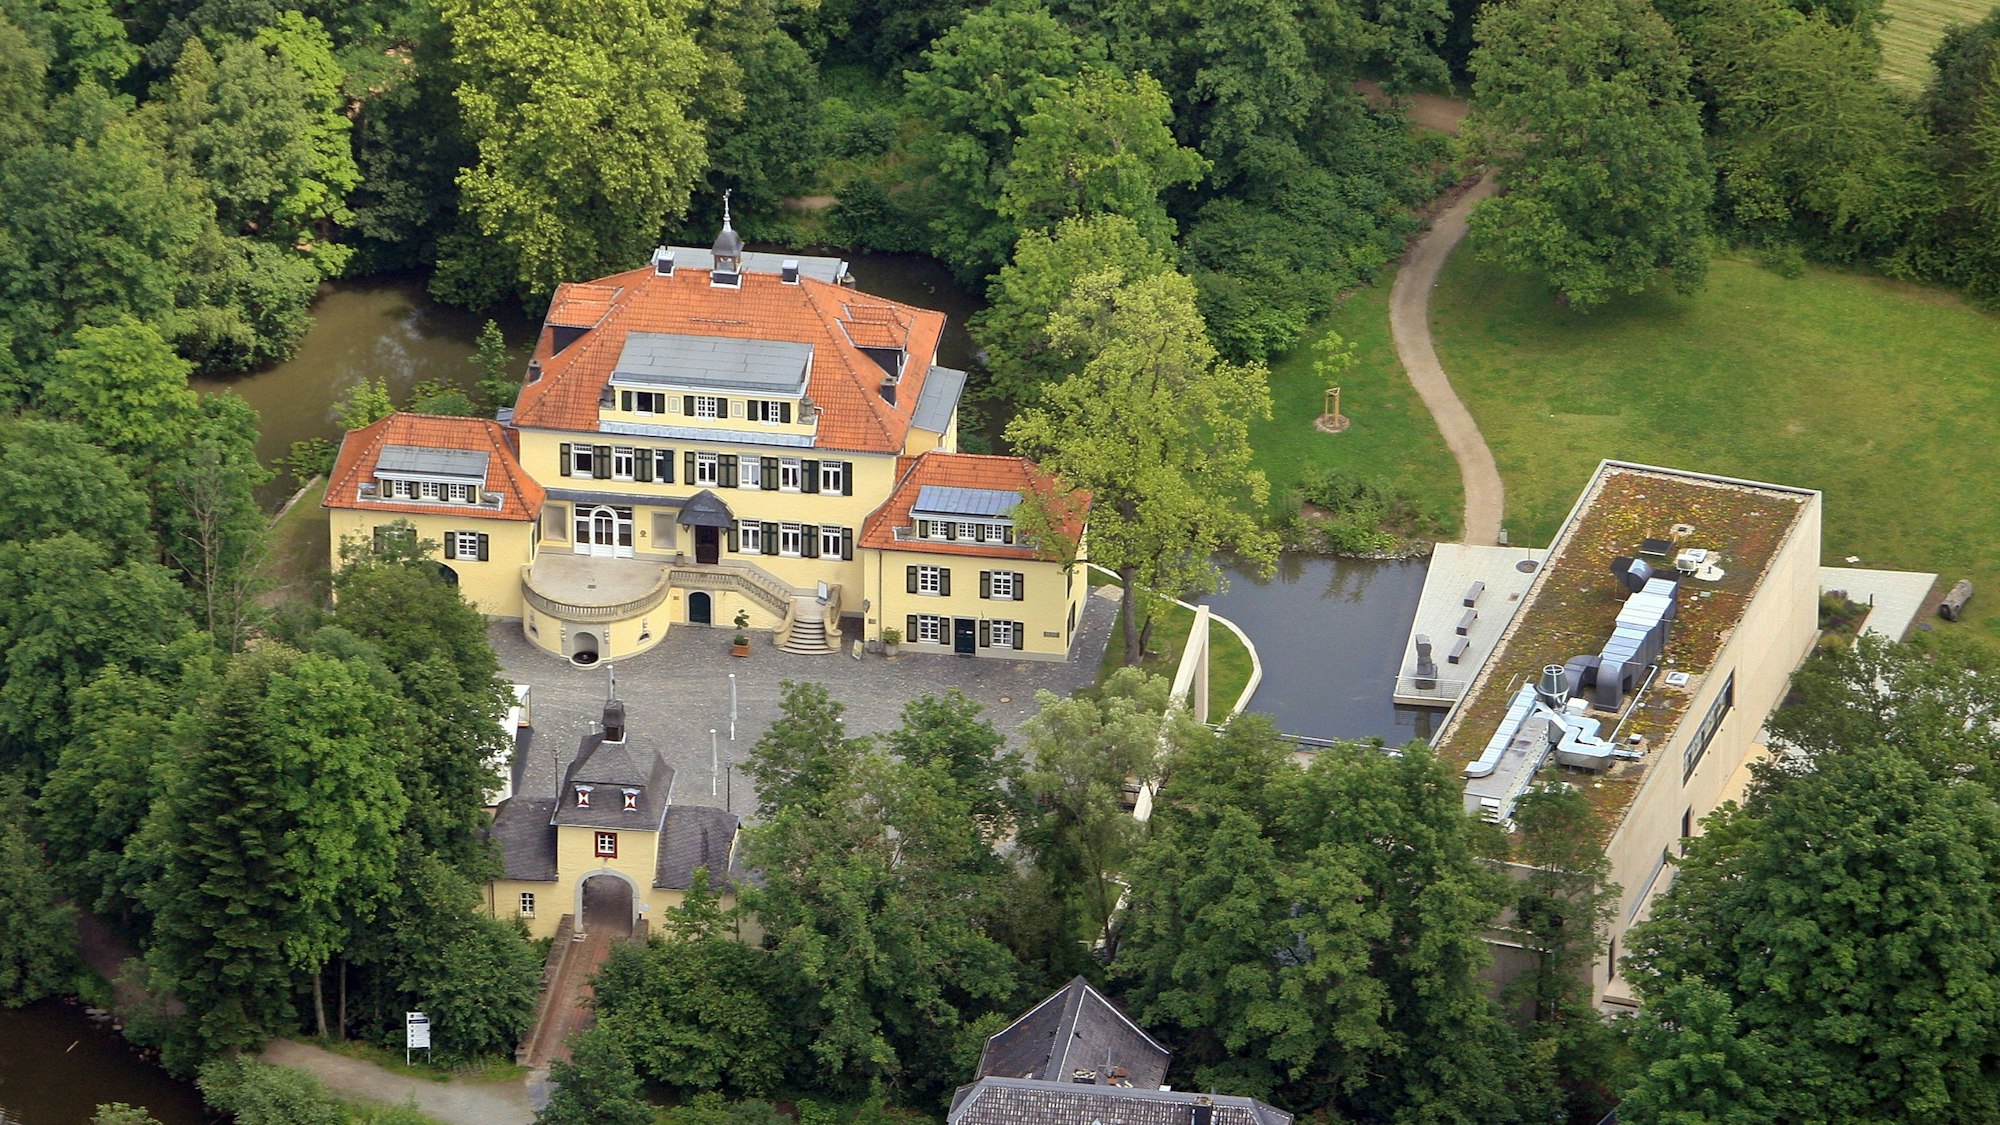 Eine Luftaufnahme von Schloss Eulenbroich inmitten von Waldgebiet und einer Wiesenfläche, die Platz für einen Spielpatz bieten könnte.